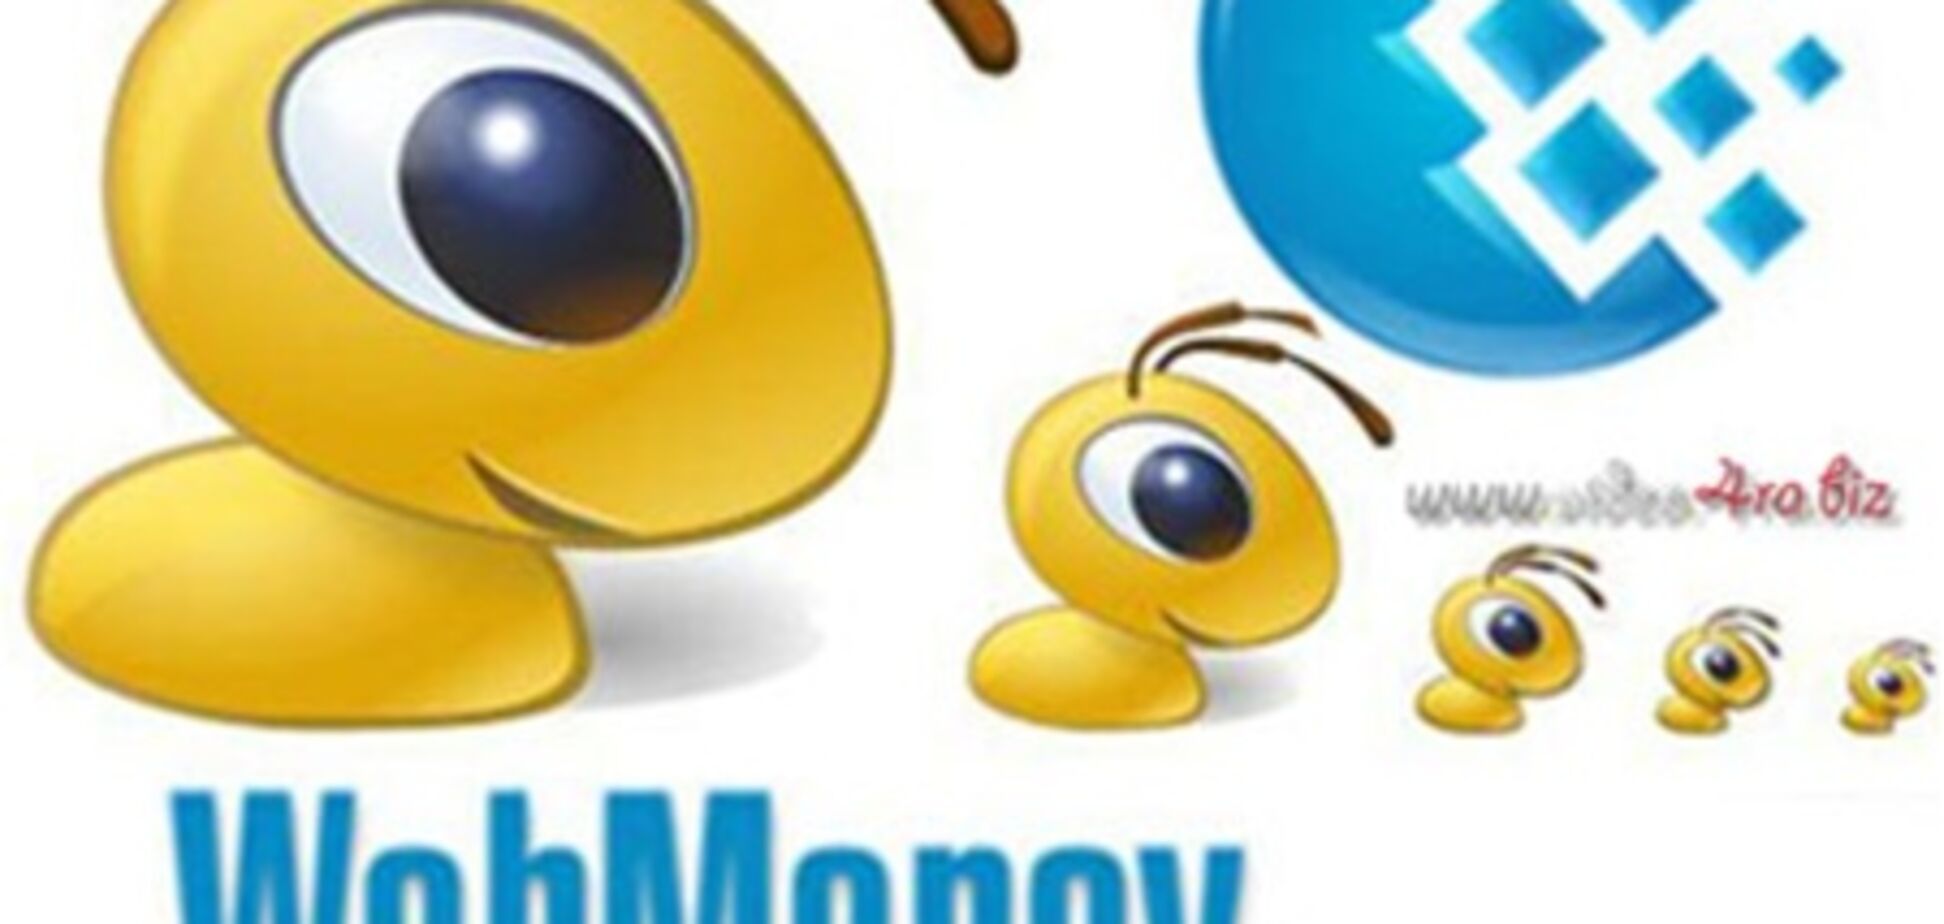 WebMoney: снимать более 4 тыс. грн  в месяц можно